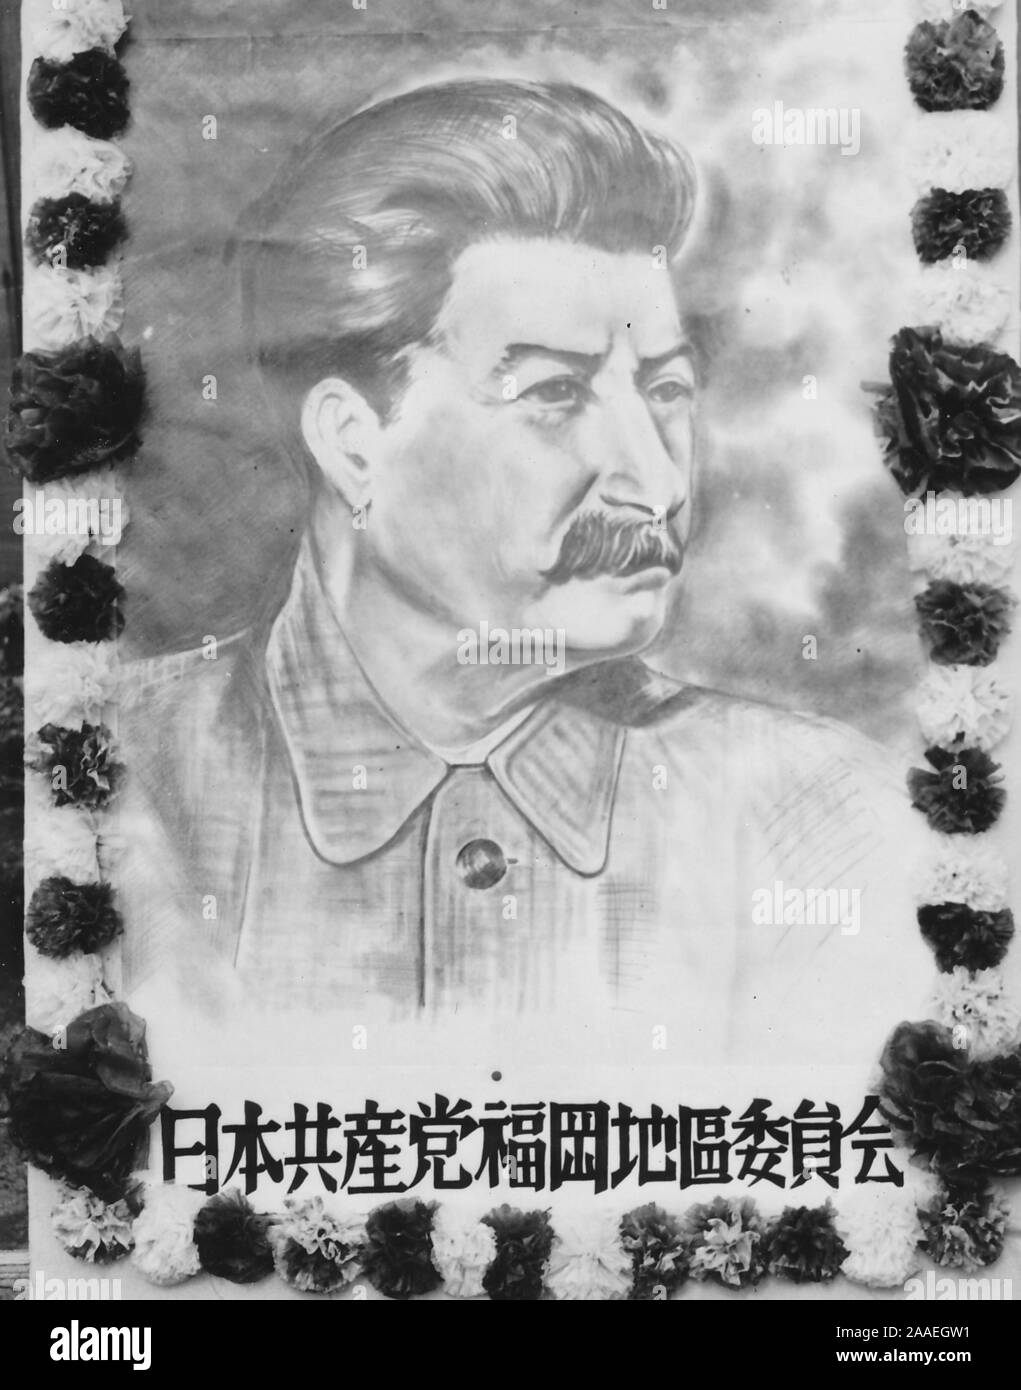 Plakat mit der Darstellung eines drei-viertel Profil Porträt der Sowjetischen kommunistischen Führer Joseph Stalin, mit einem floralen Grenze und eine Beschriftung mit dem Zeichen für die Kommunistische Partei Japans (Nihon Kyosan-zu) und Fukuoka, in der Präfektur Fukuoka, Japan, 1950. () Stockfoto